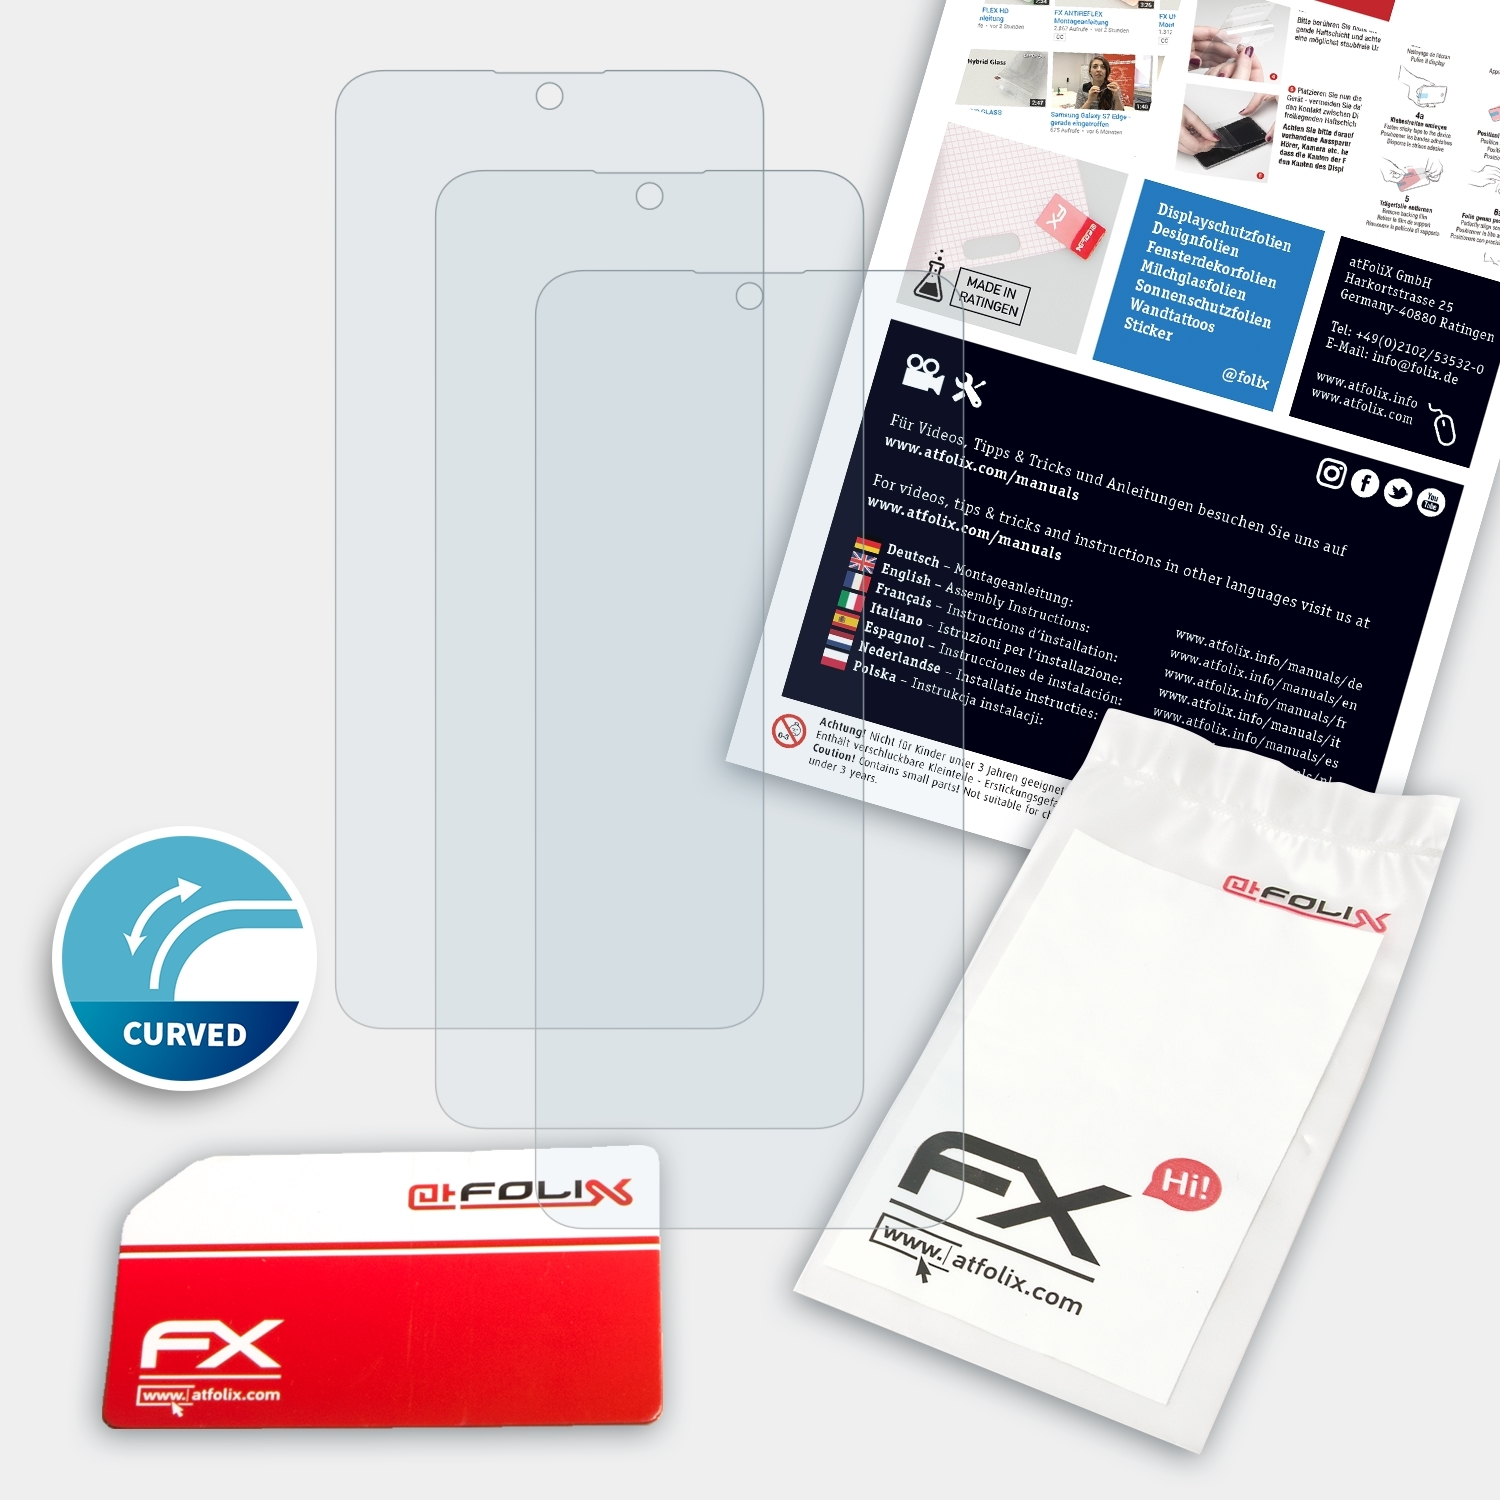 ATFOLIX Y6p) Displayschutz(für FX-ActiFleX Huawei 3x